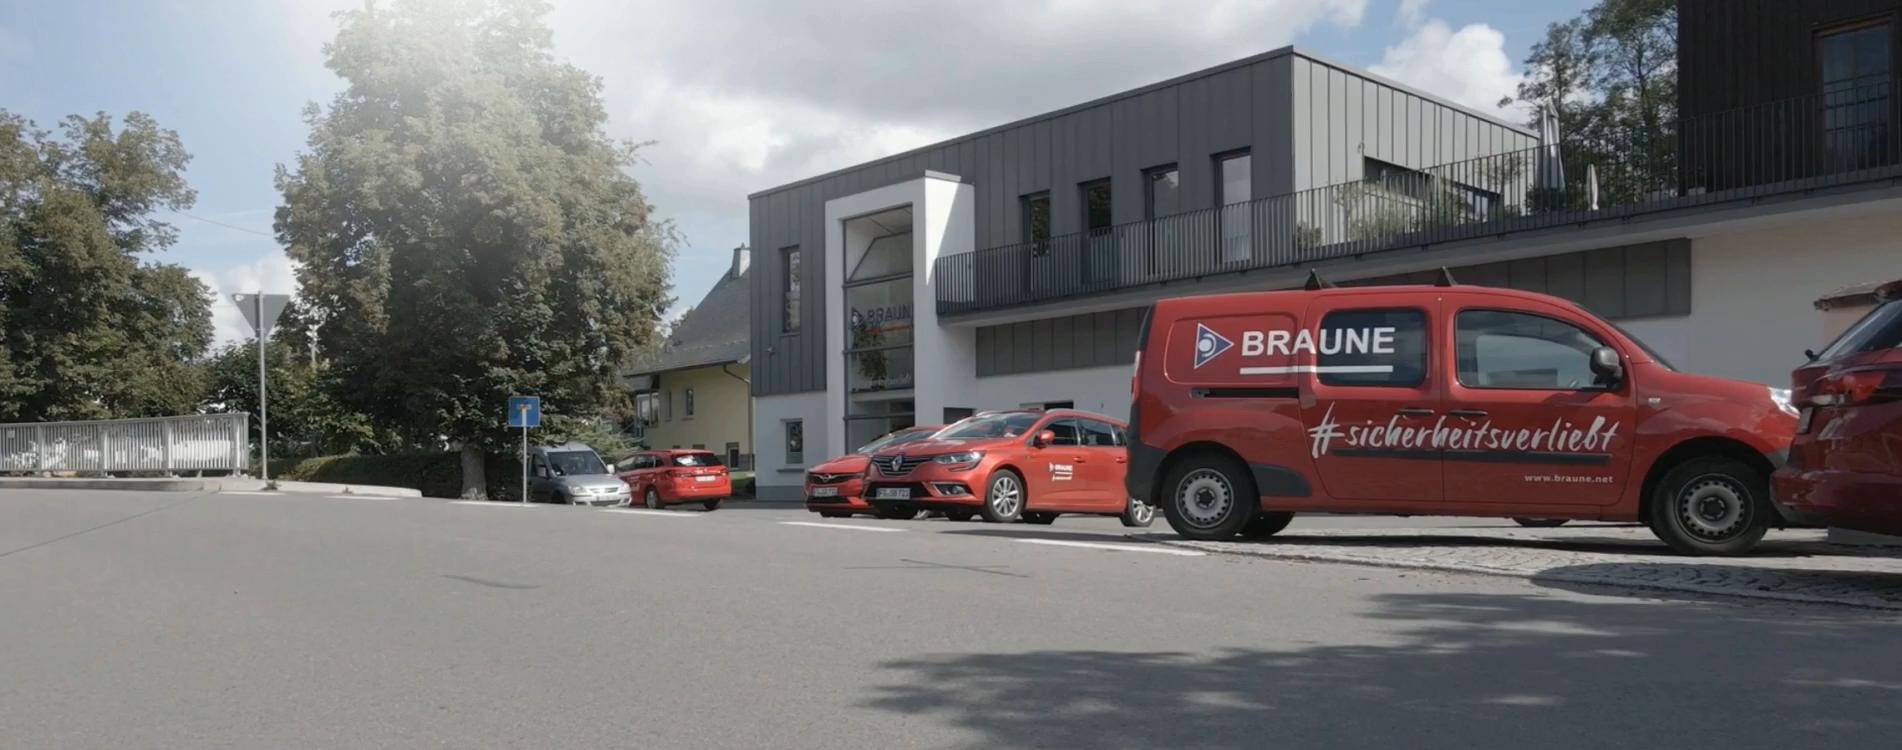 BRAUNE GmbH